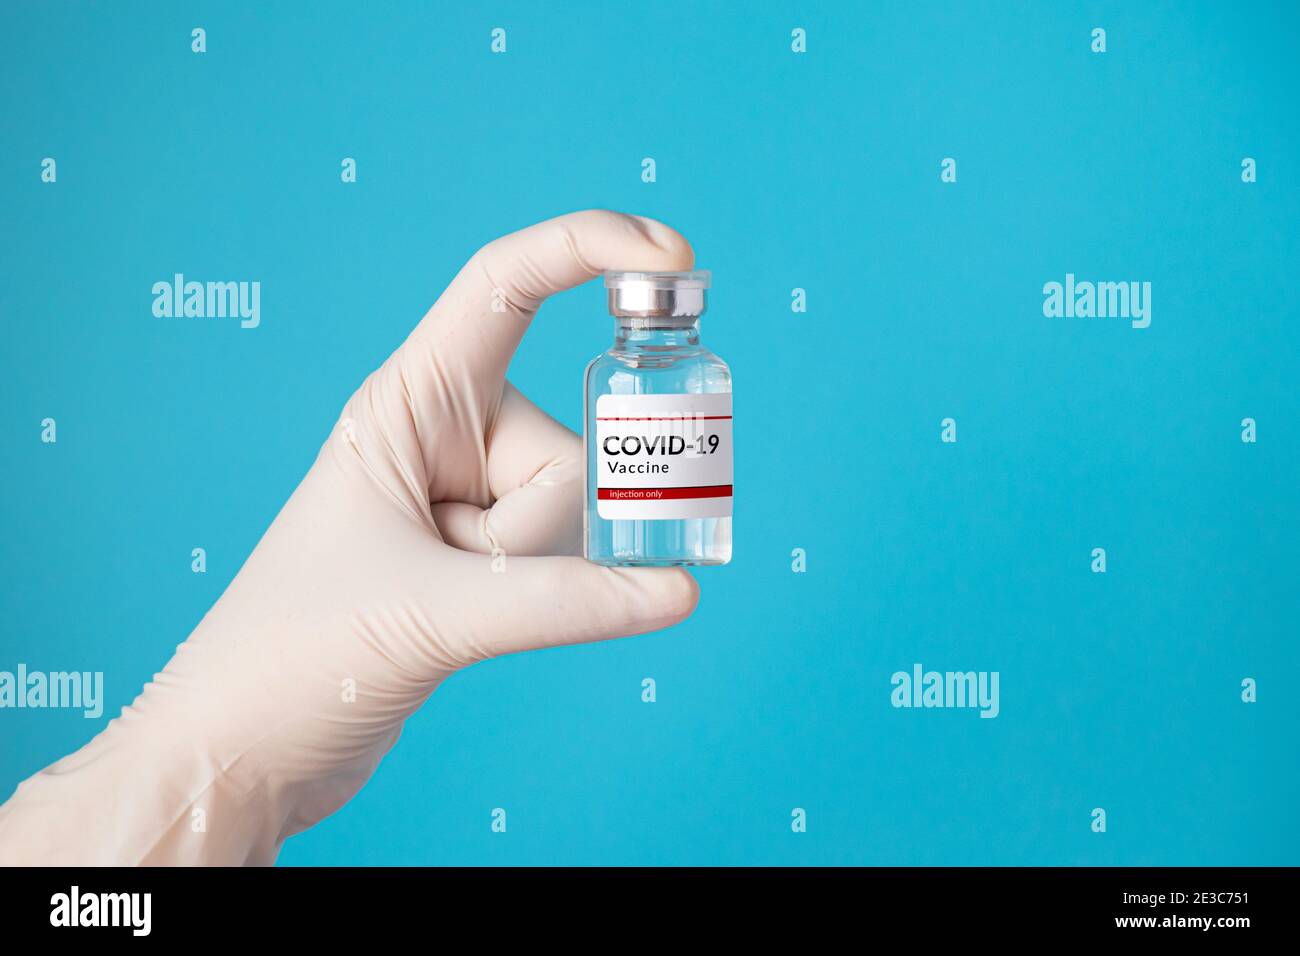 Vaccin coronavirus COVID-19 et concept d'immunisation. Main dans un gant blanc contenant un flacon de vaccin pour injection isolé sur fond bleu Banque D'Images